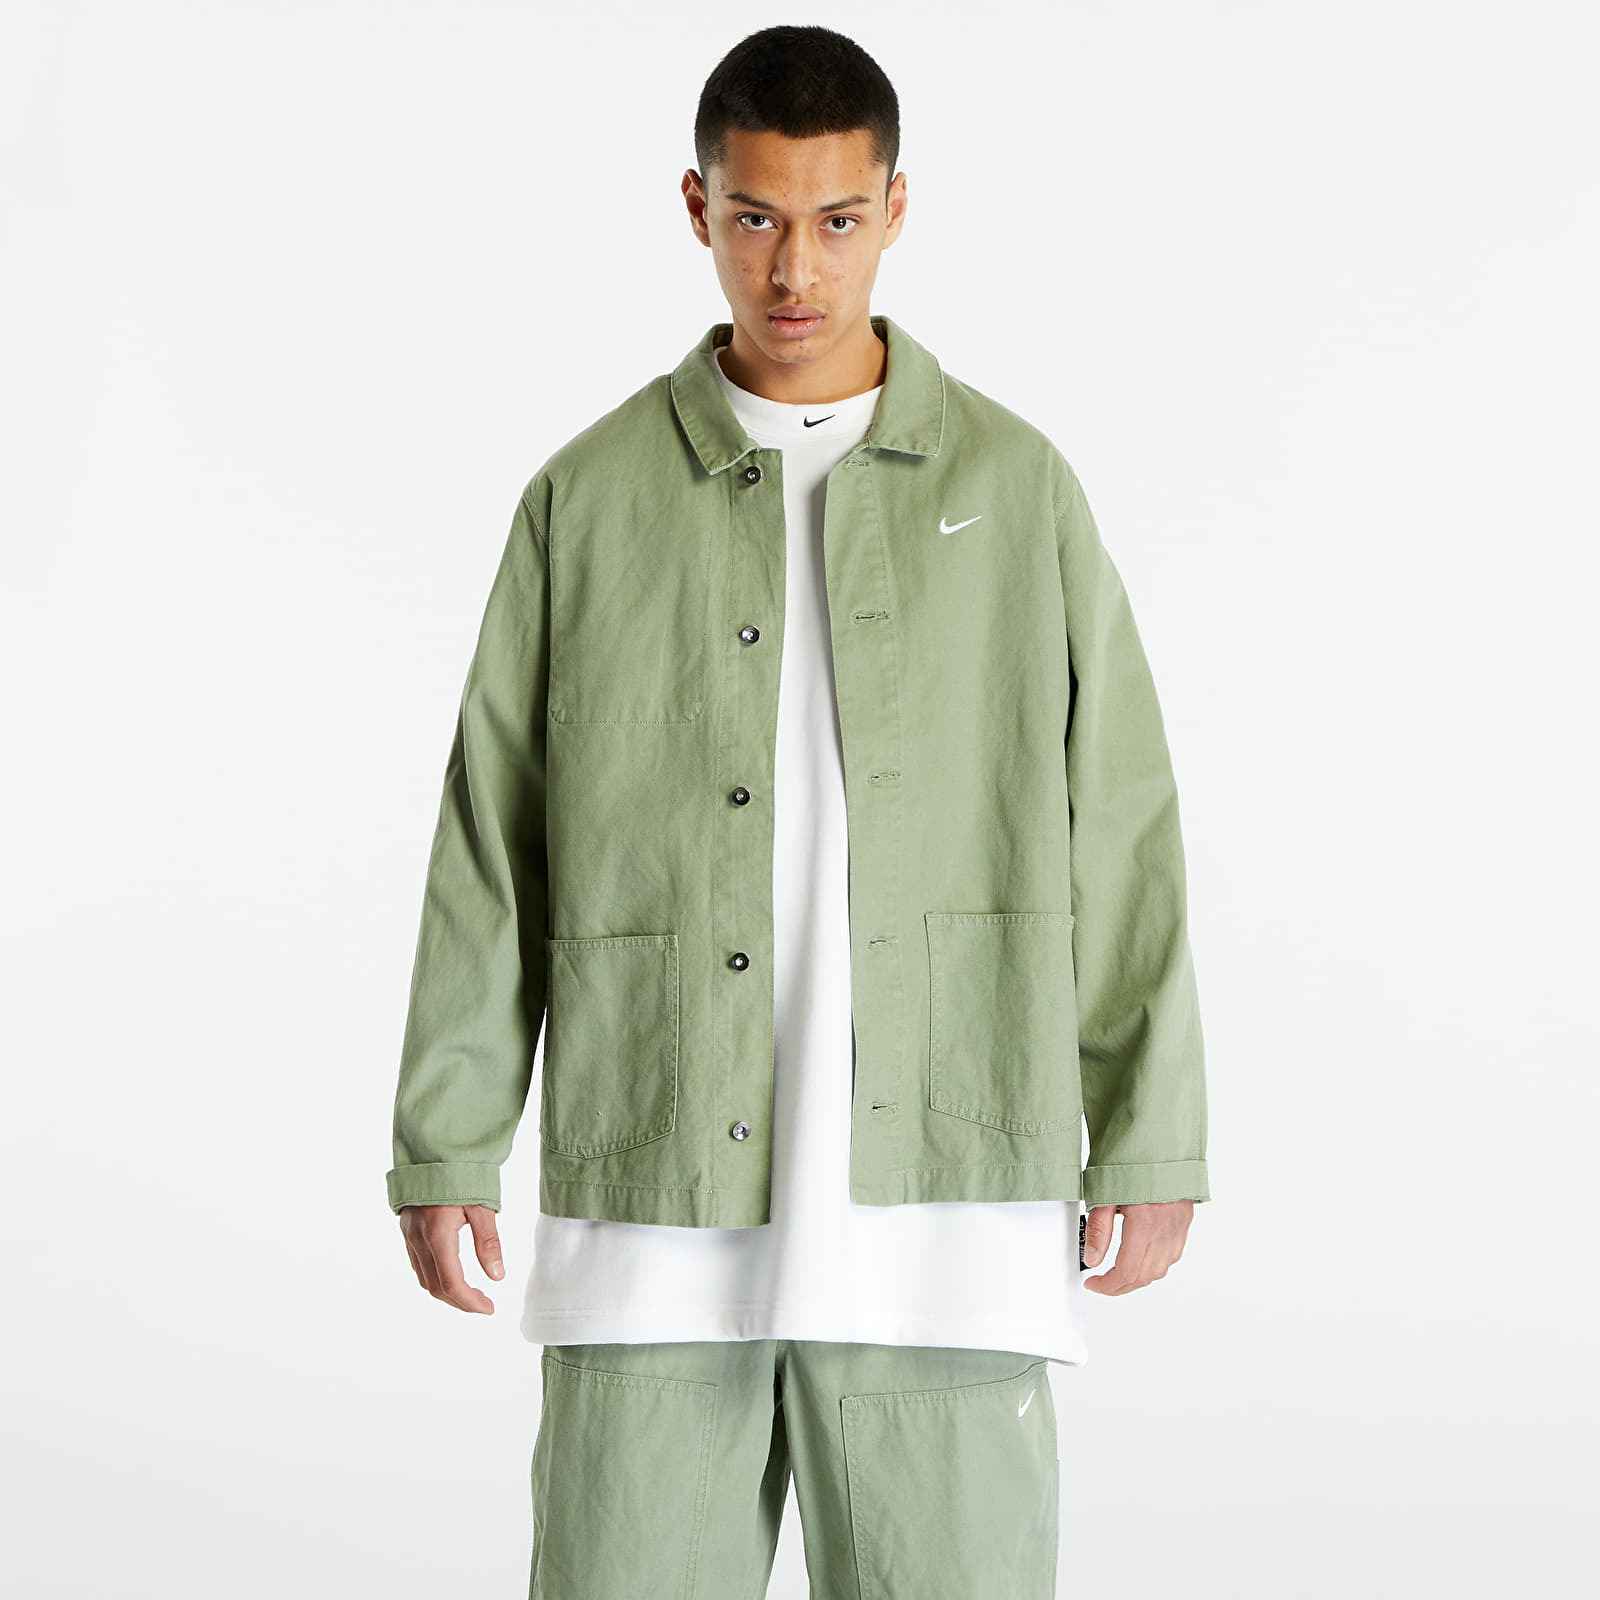 Levně Nike Sportswear Men's Unlined Chore Coat Oil Green/ White